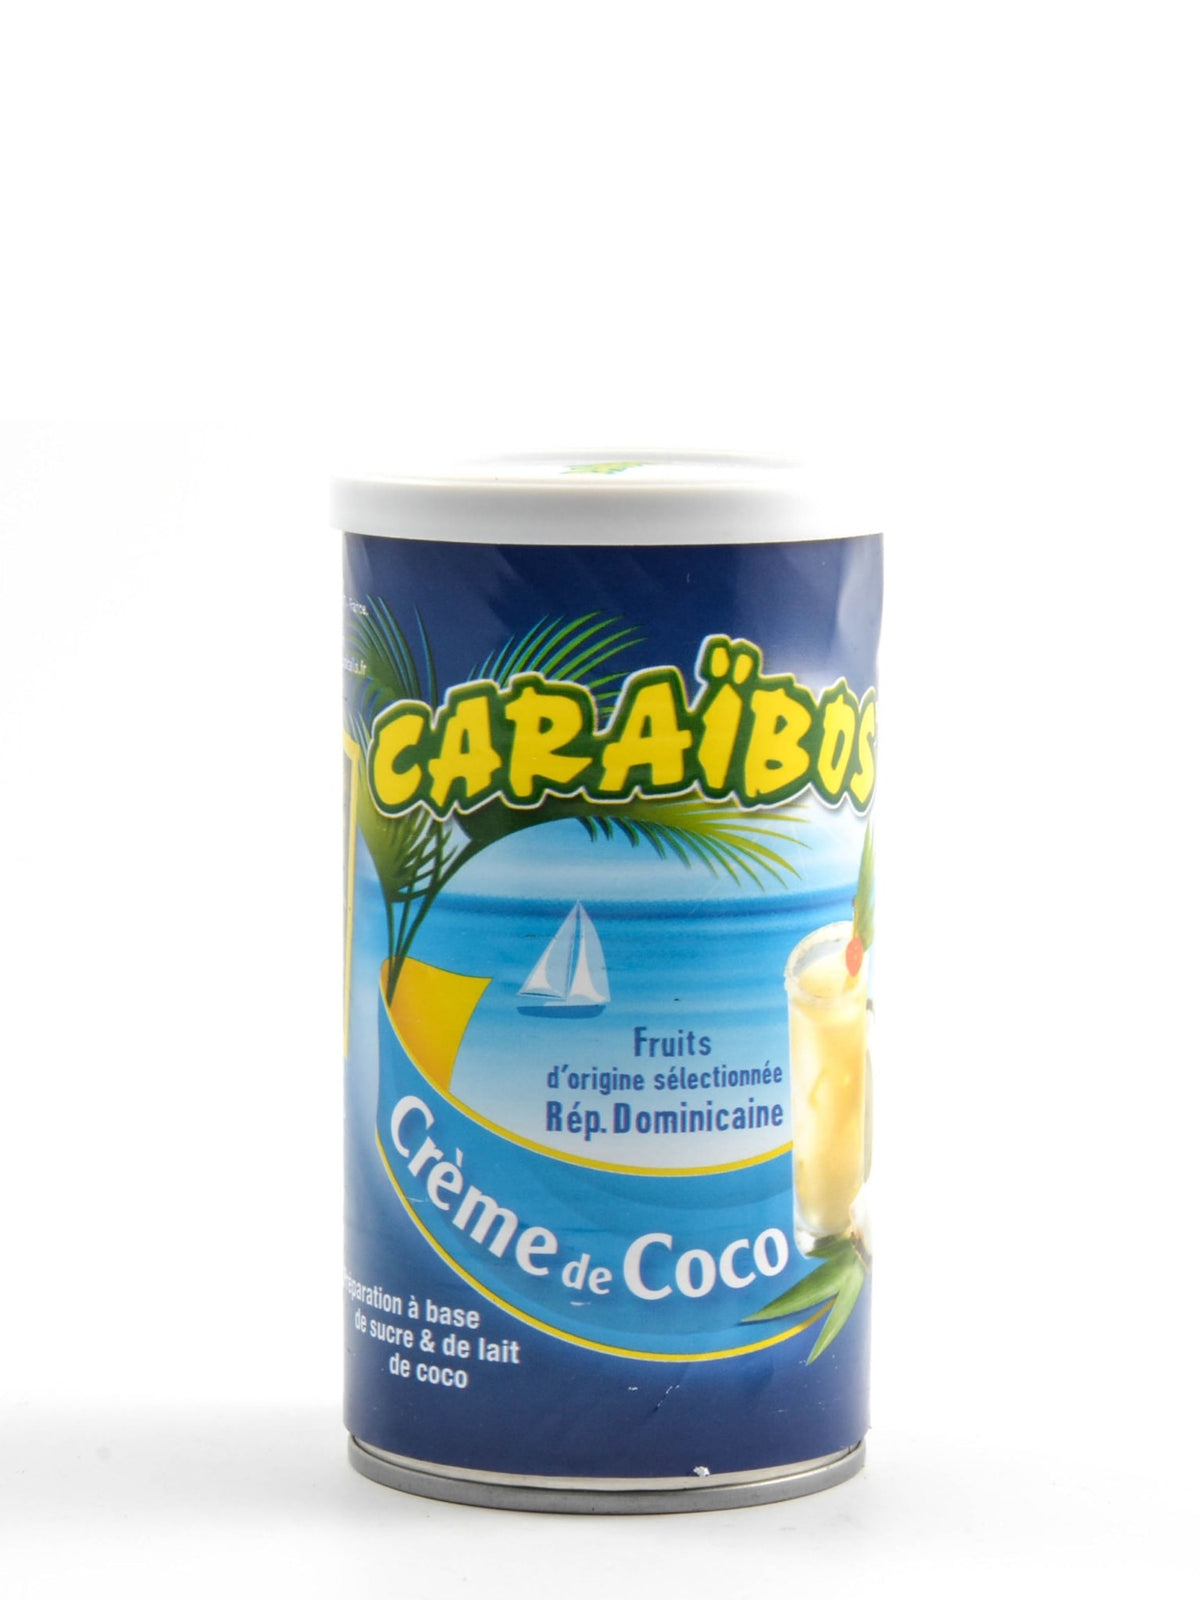 Kokoscreme fra Caraïbos - Perfekt til at tilføje en eksotisk smag til cocktails og desserter.